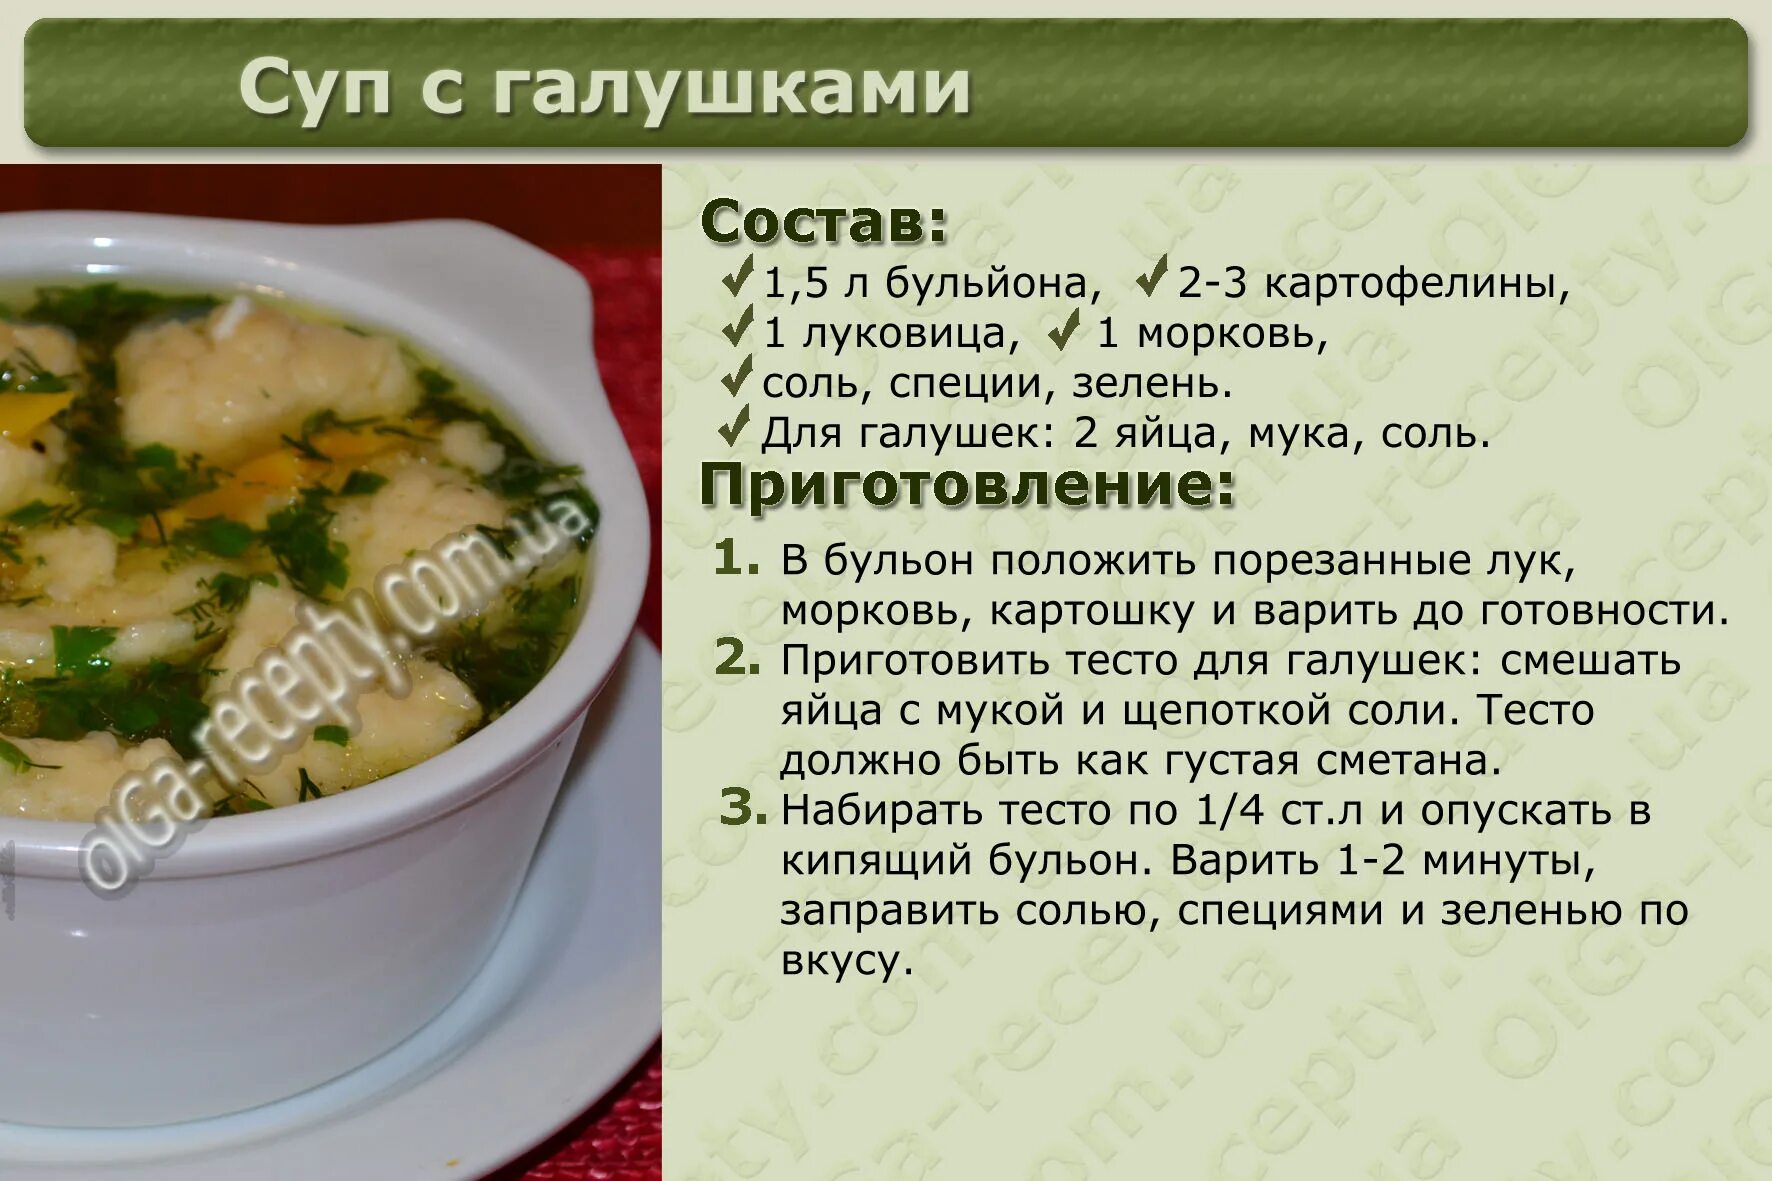 Рецепты в картинках. Рецепты первых блюд с описанием. Рецепты супов в картинках с описанием. Рецепты в картинках с описанием. Рис на 3 литра супа